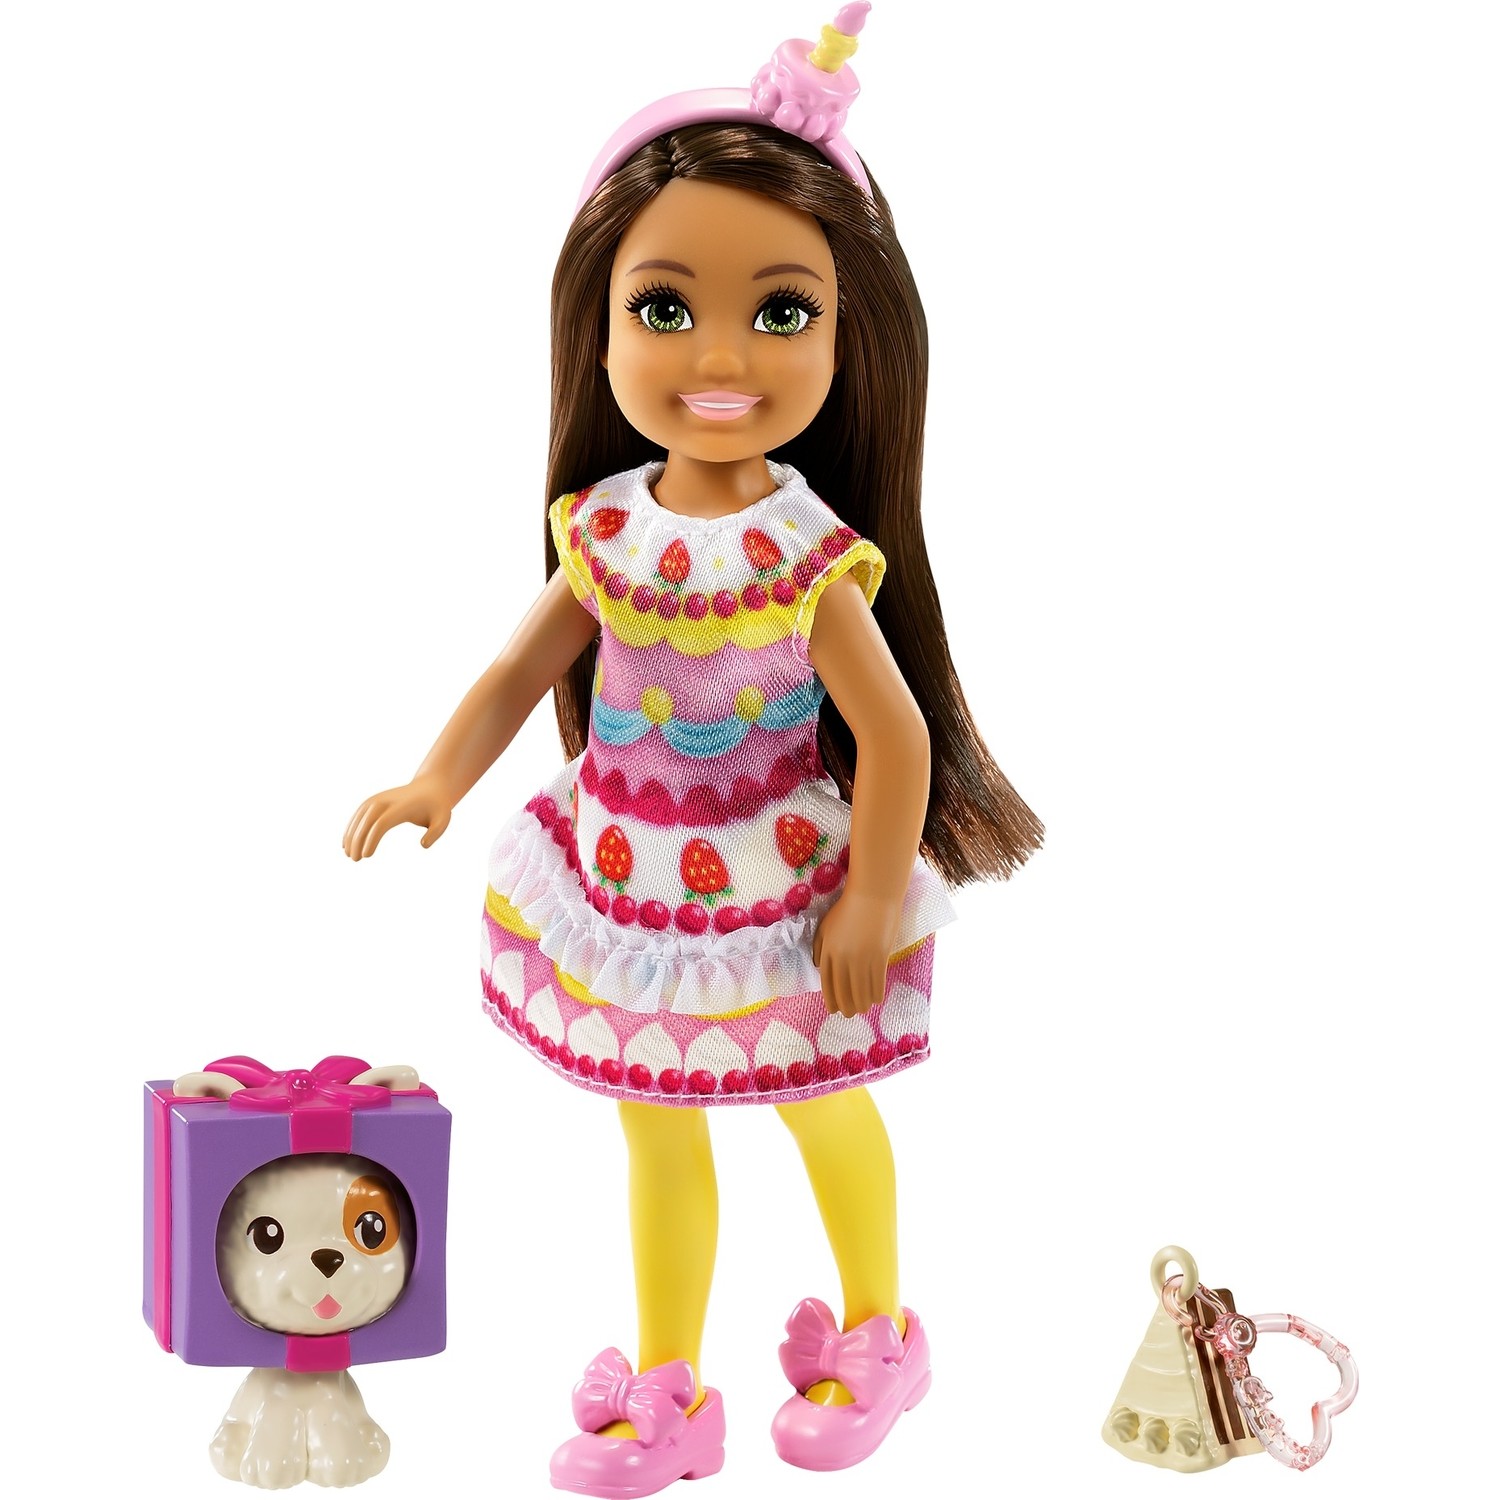 Игровой набор Barbie Челси с питомцем GRP71 игровой набор barbie скиппер с питомцем grt88